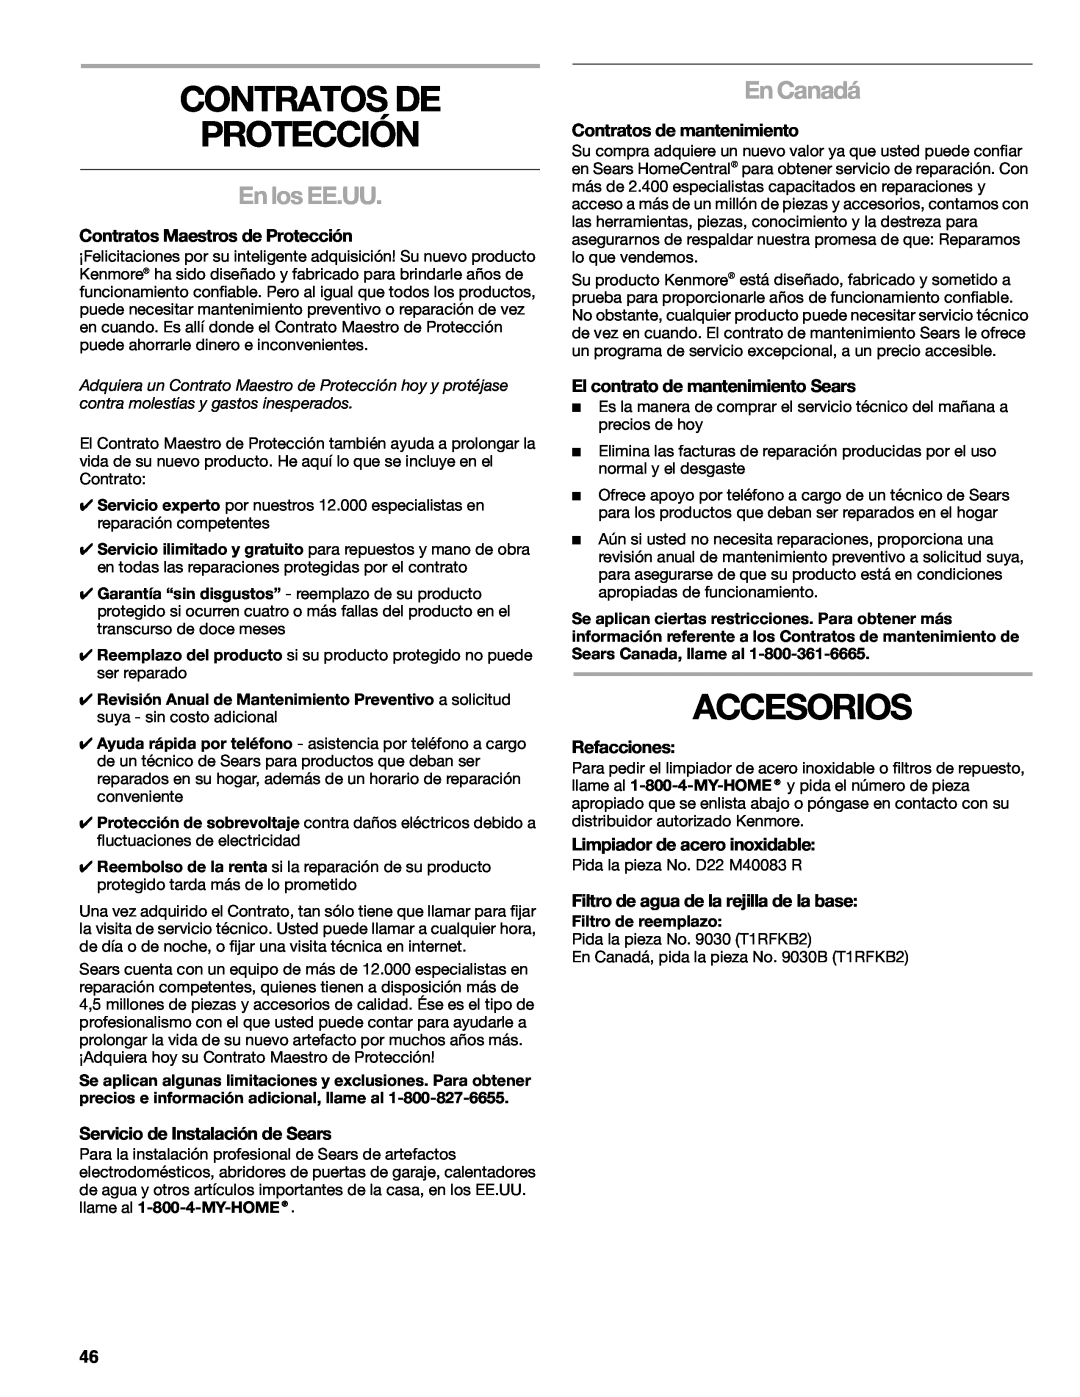 Sears T1KB2/T1RFKB2 manual Contratos De Protección, Accesorios, En los EE.UU, En Canadá, Contratos Maestros de Protección 